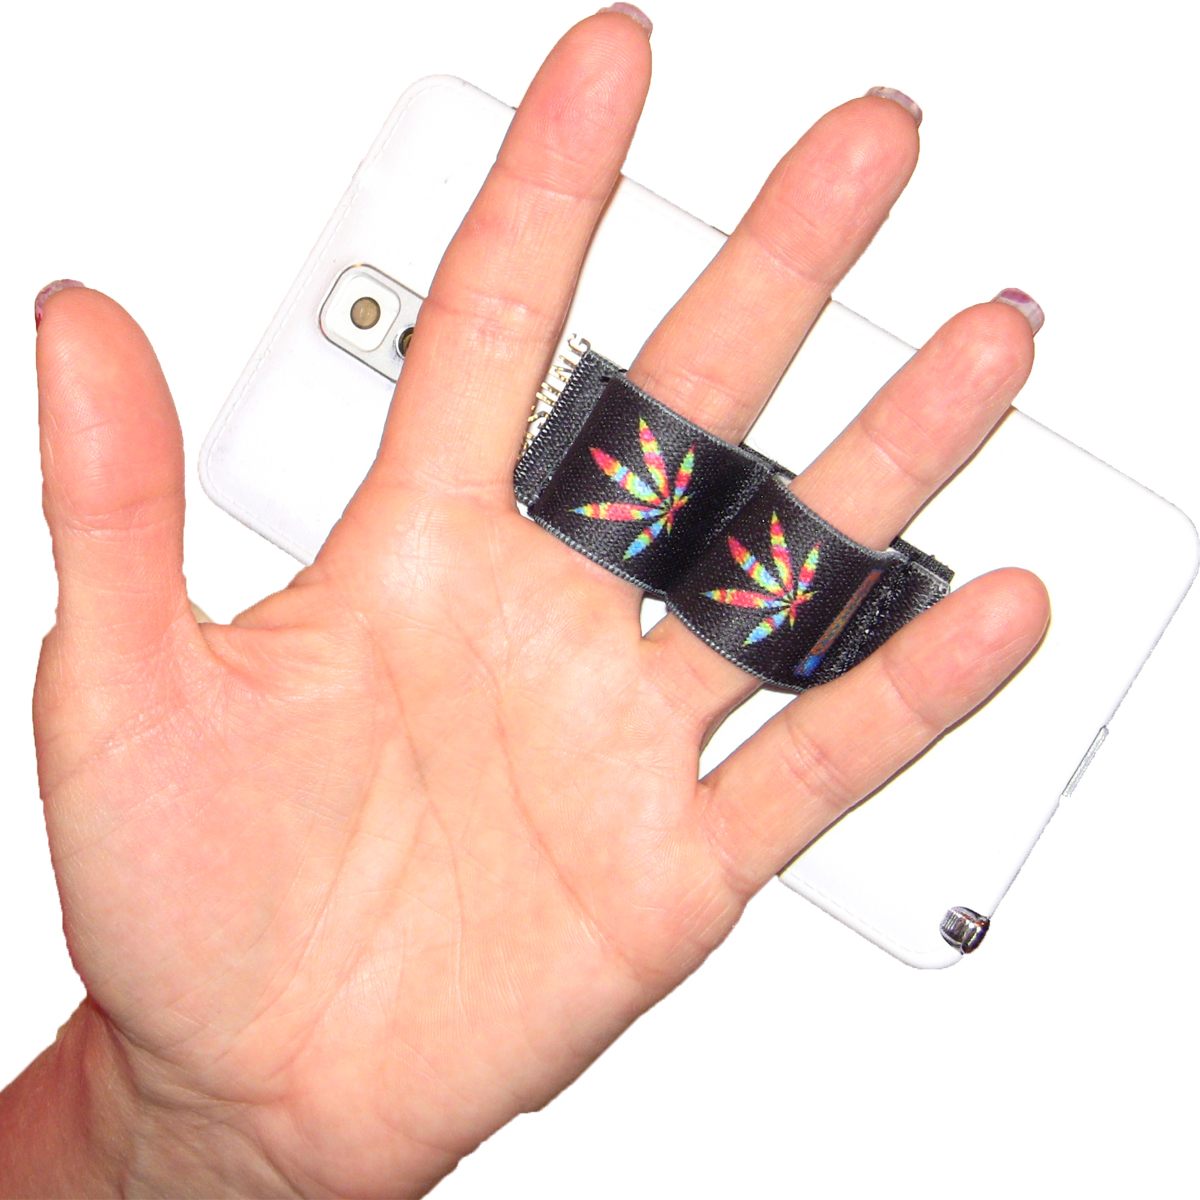 2-Loop Phone Grip - Pot Leaf Tie Dye